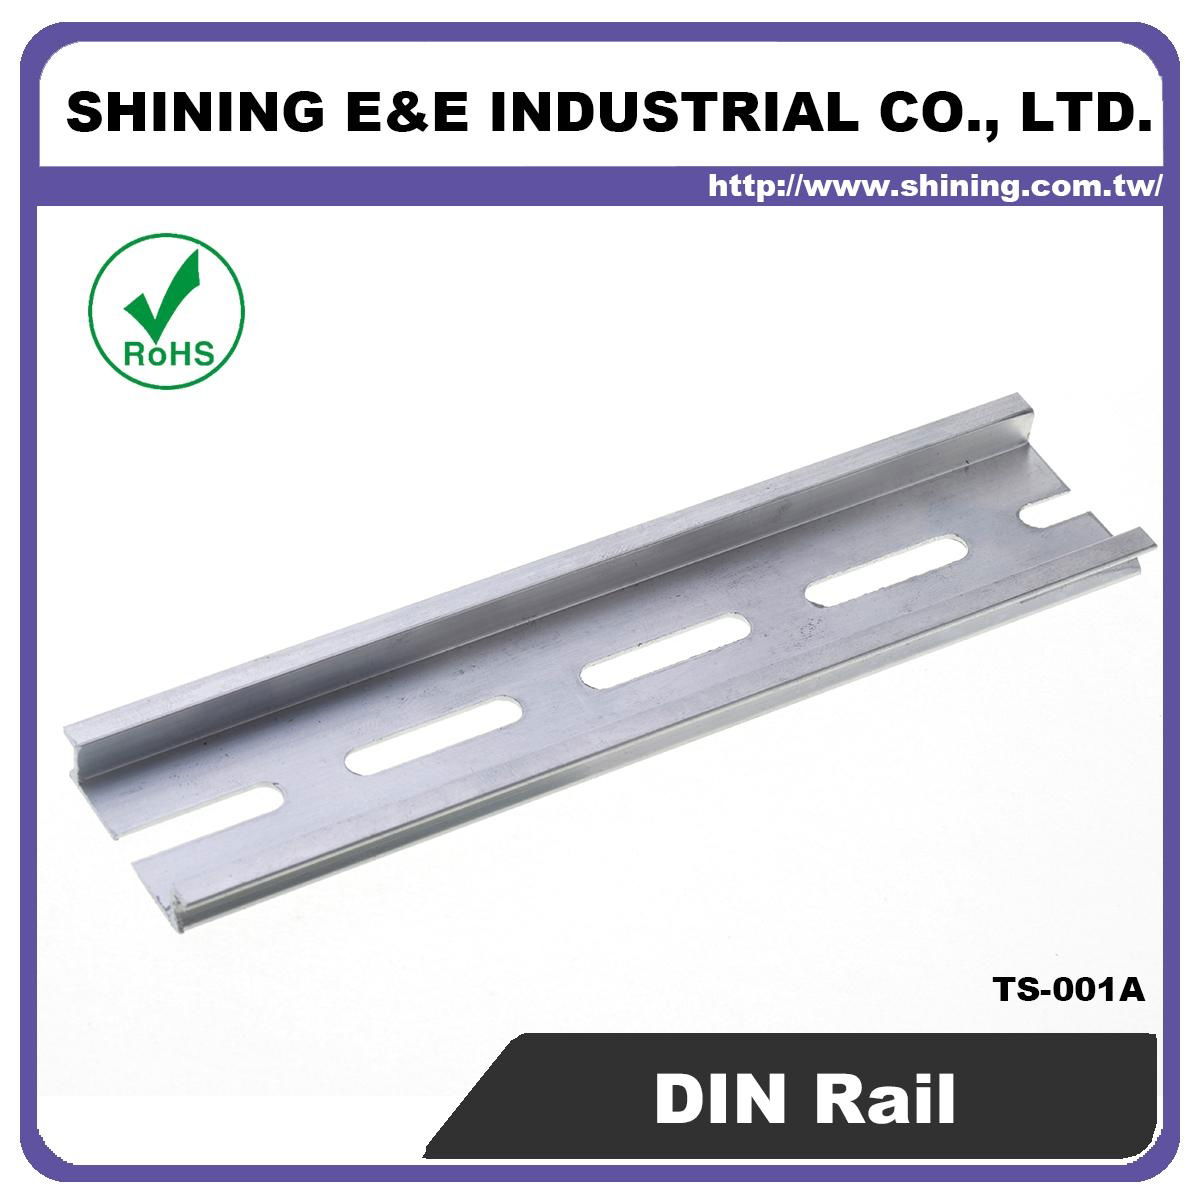 TA-001A 35mm Aluminum DIN Rail